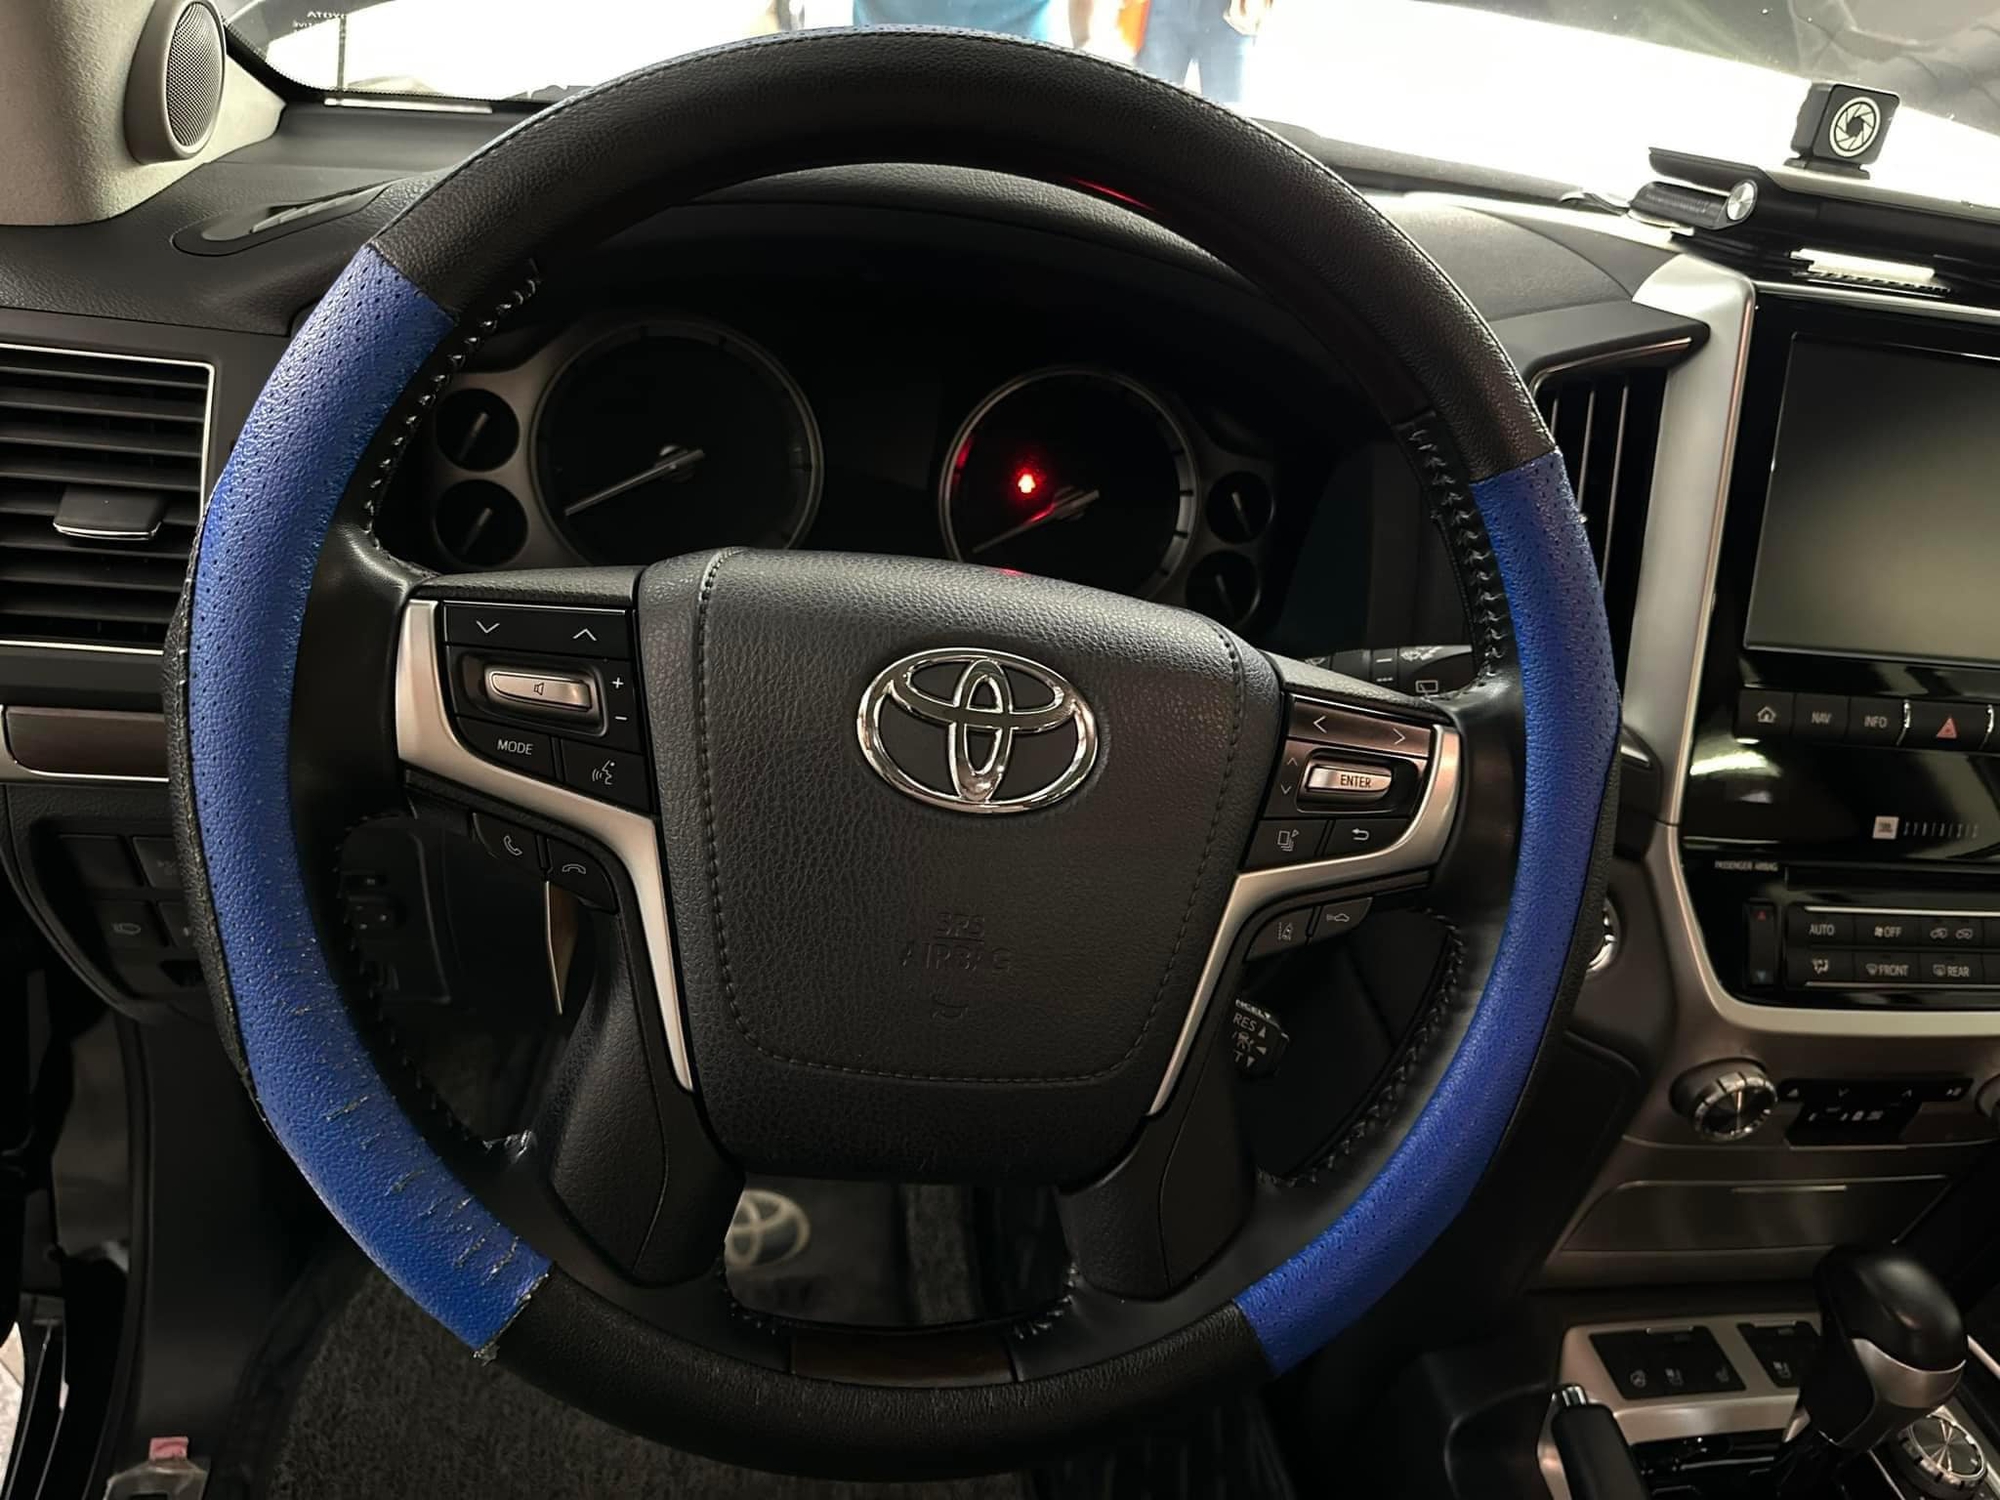 Toyota Land Cruiser đời cũ bán 6 tỷ đồng đắt hơn xe đời mới, người bán chia sẻ: Ghế sau gần như không dùng - ảnh 7